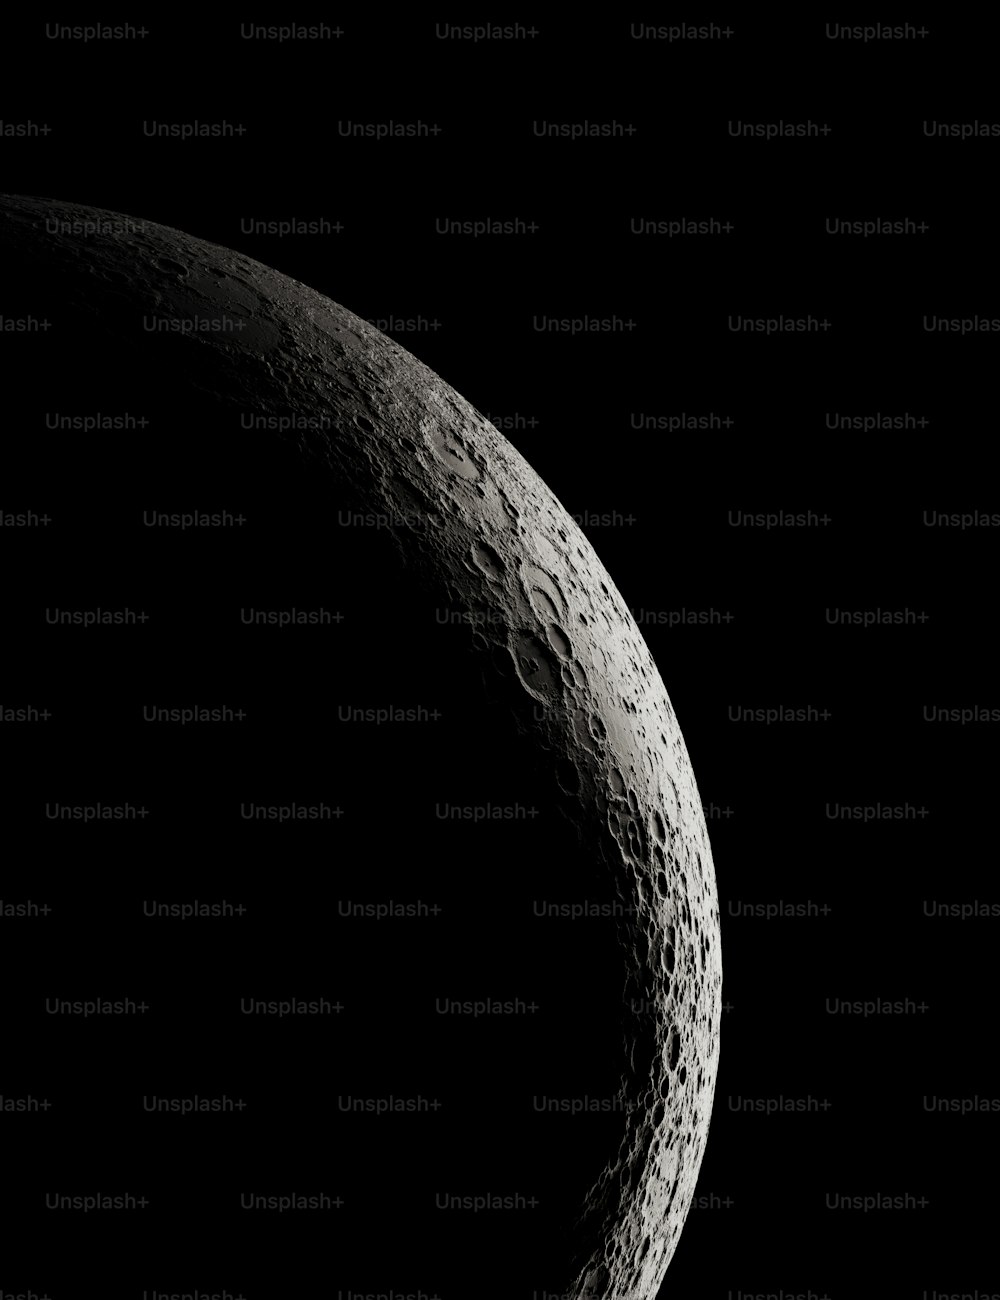 Ein Schwarz-Weiß-Foto des Mondes